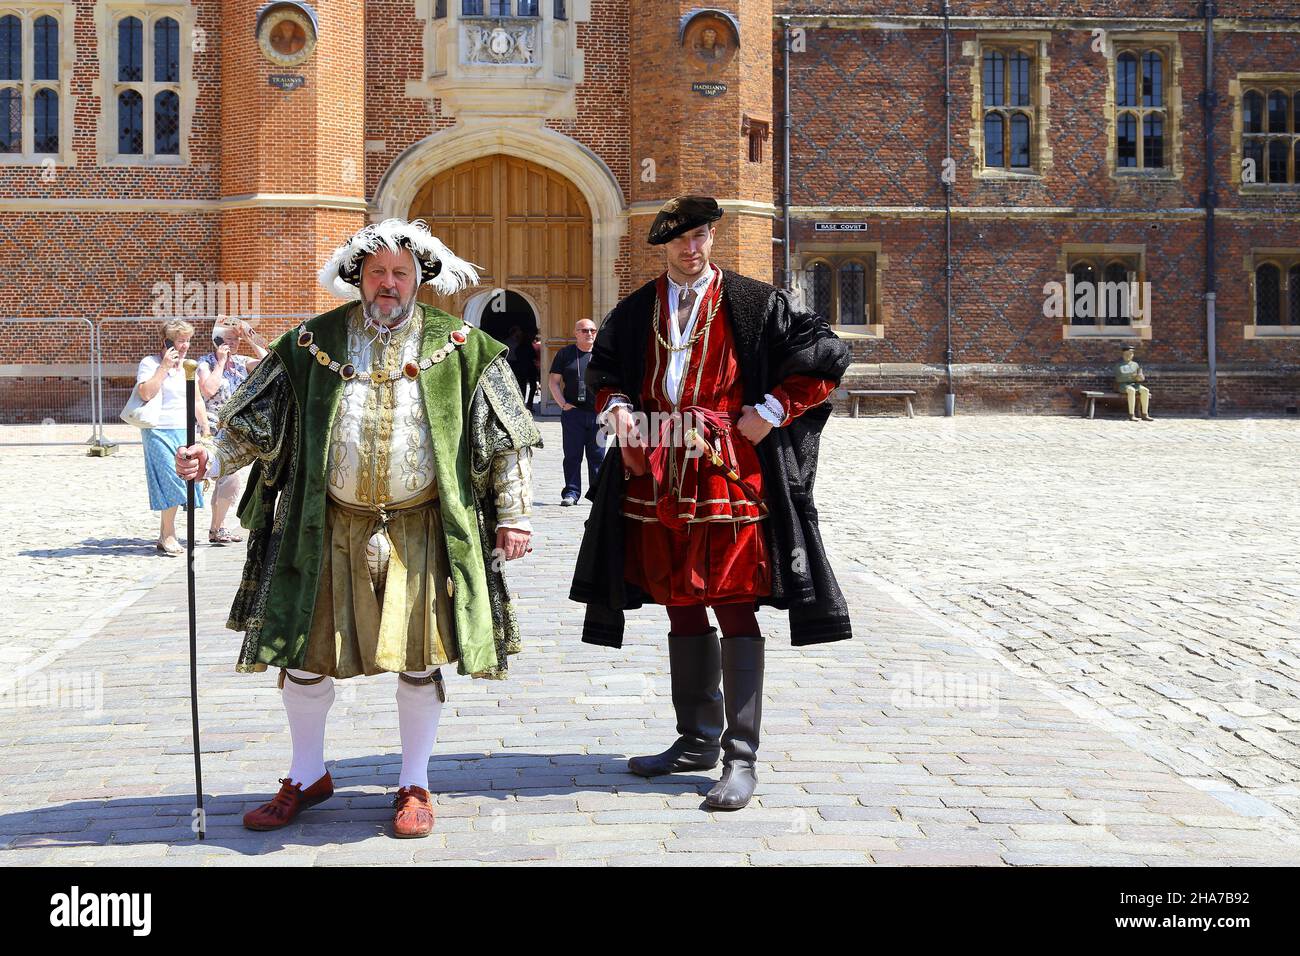 HAMPTON, GRANDE-BRETAGNE - 18 MAI 2014 : il s'agit d'un artiste non identifié dans les personnages du roi Henry VIII et du cardinal Thomas Wolsey dans l'Hampton Banque D'Images